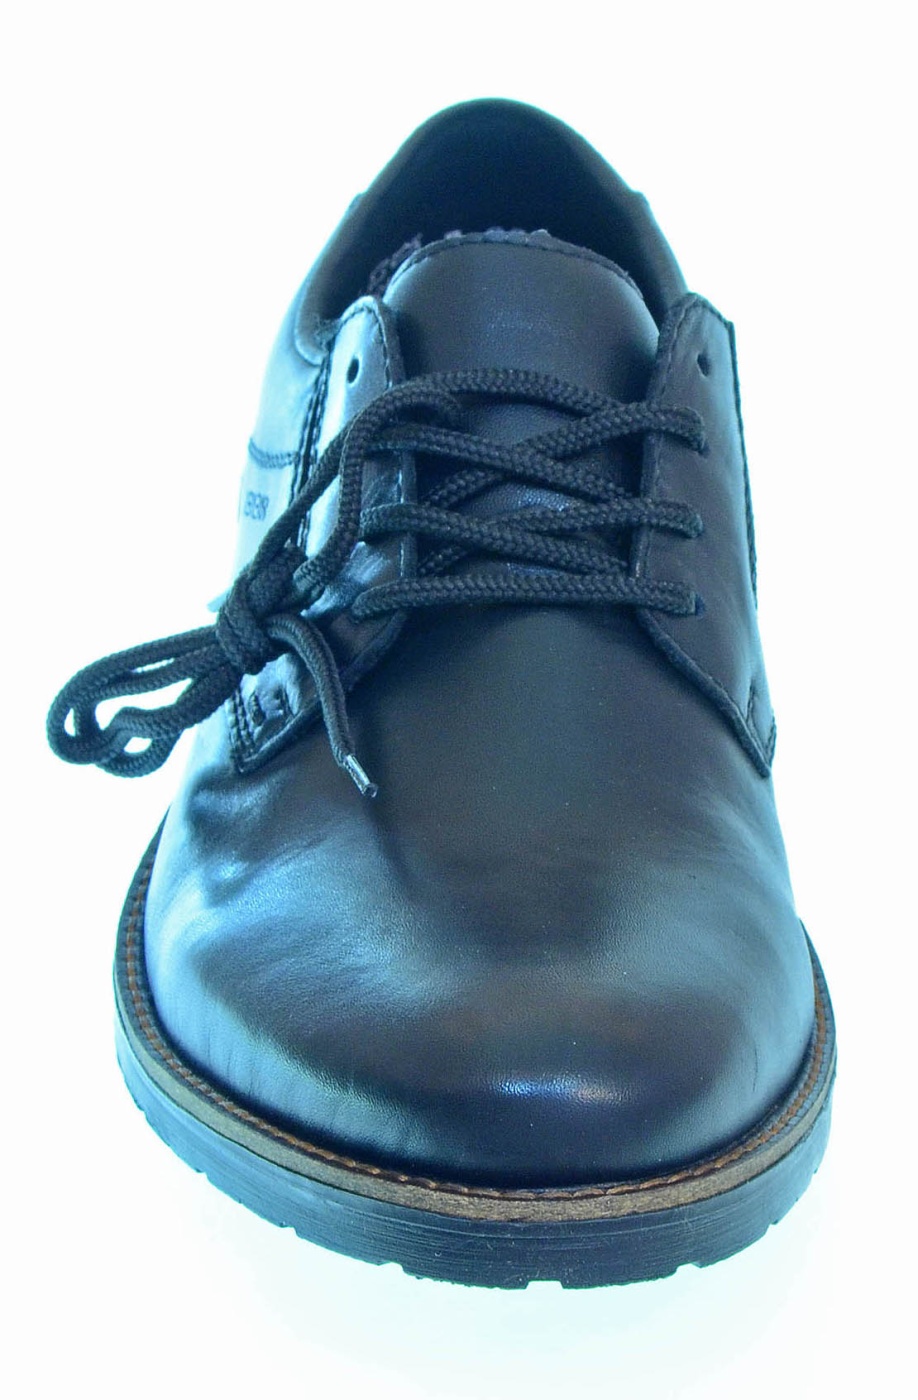 Купить Туфли мужские в магазине Дом обуви и одежды